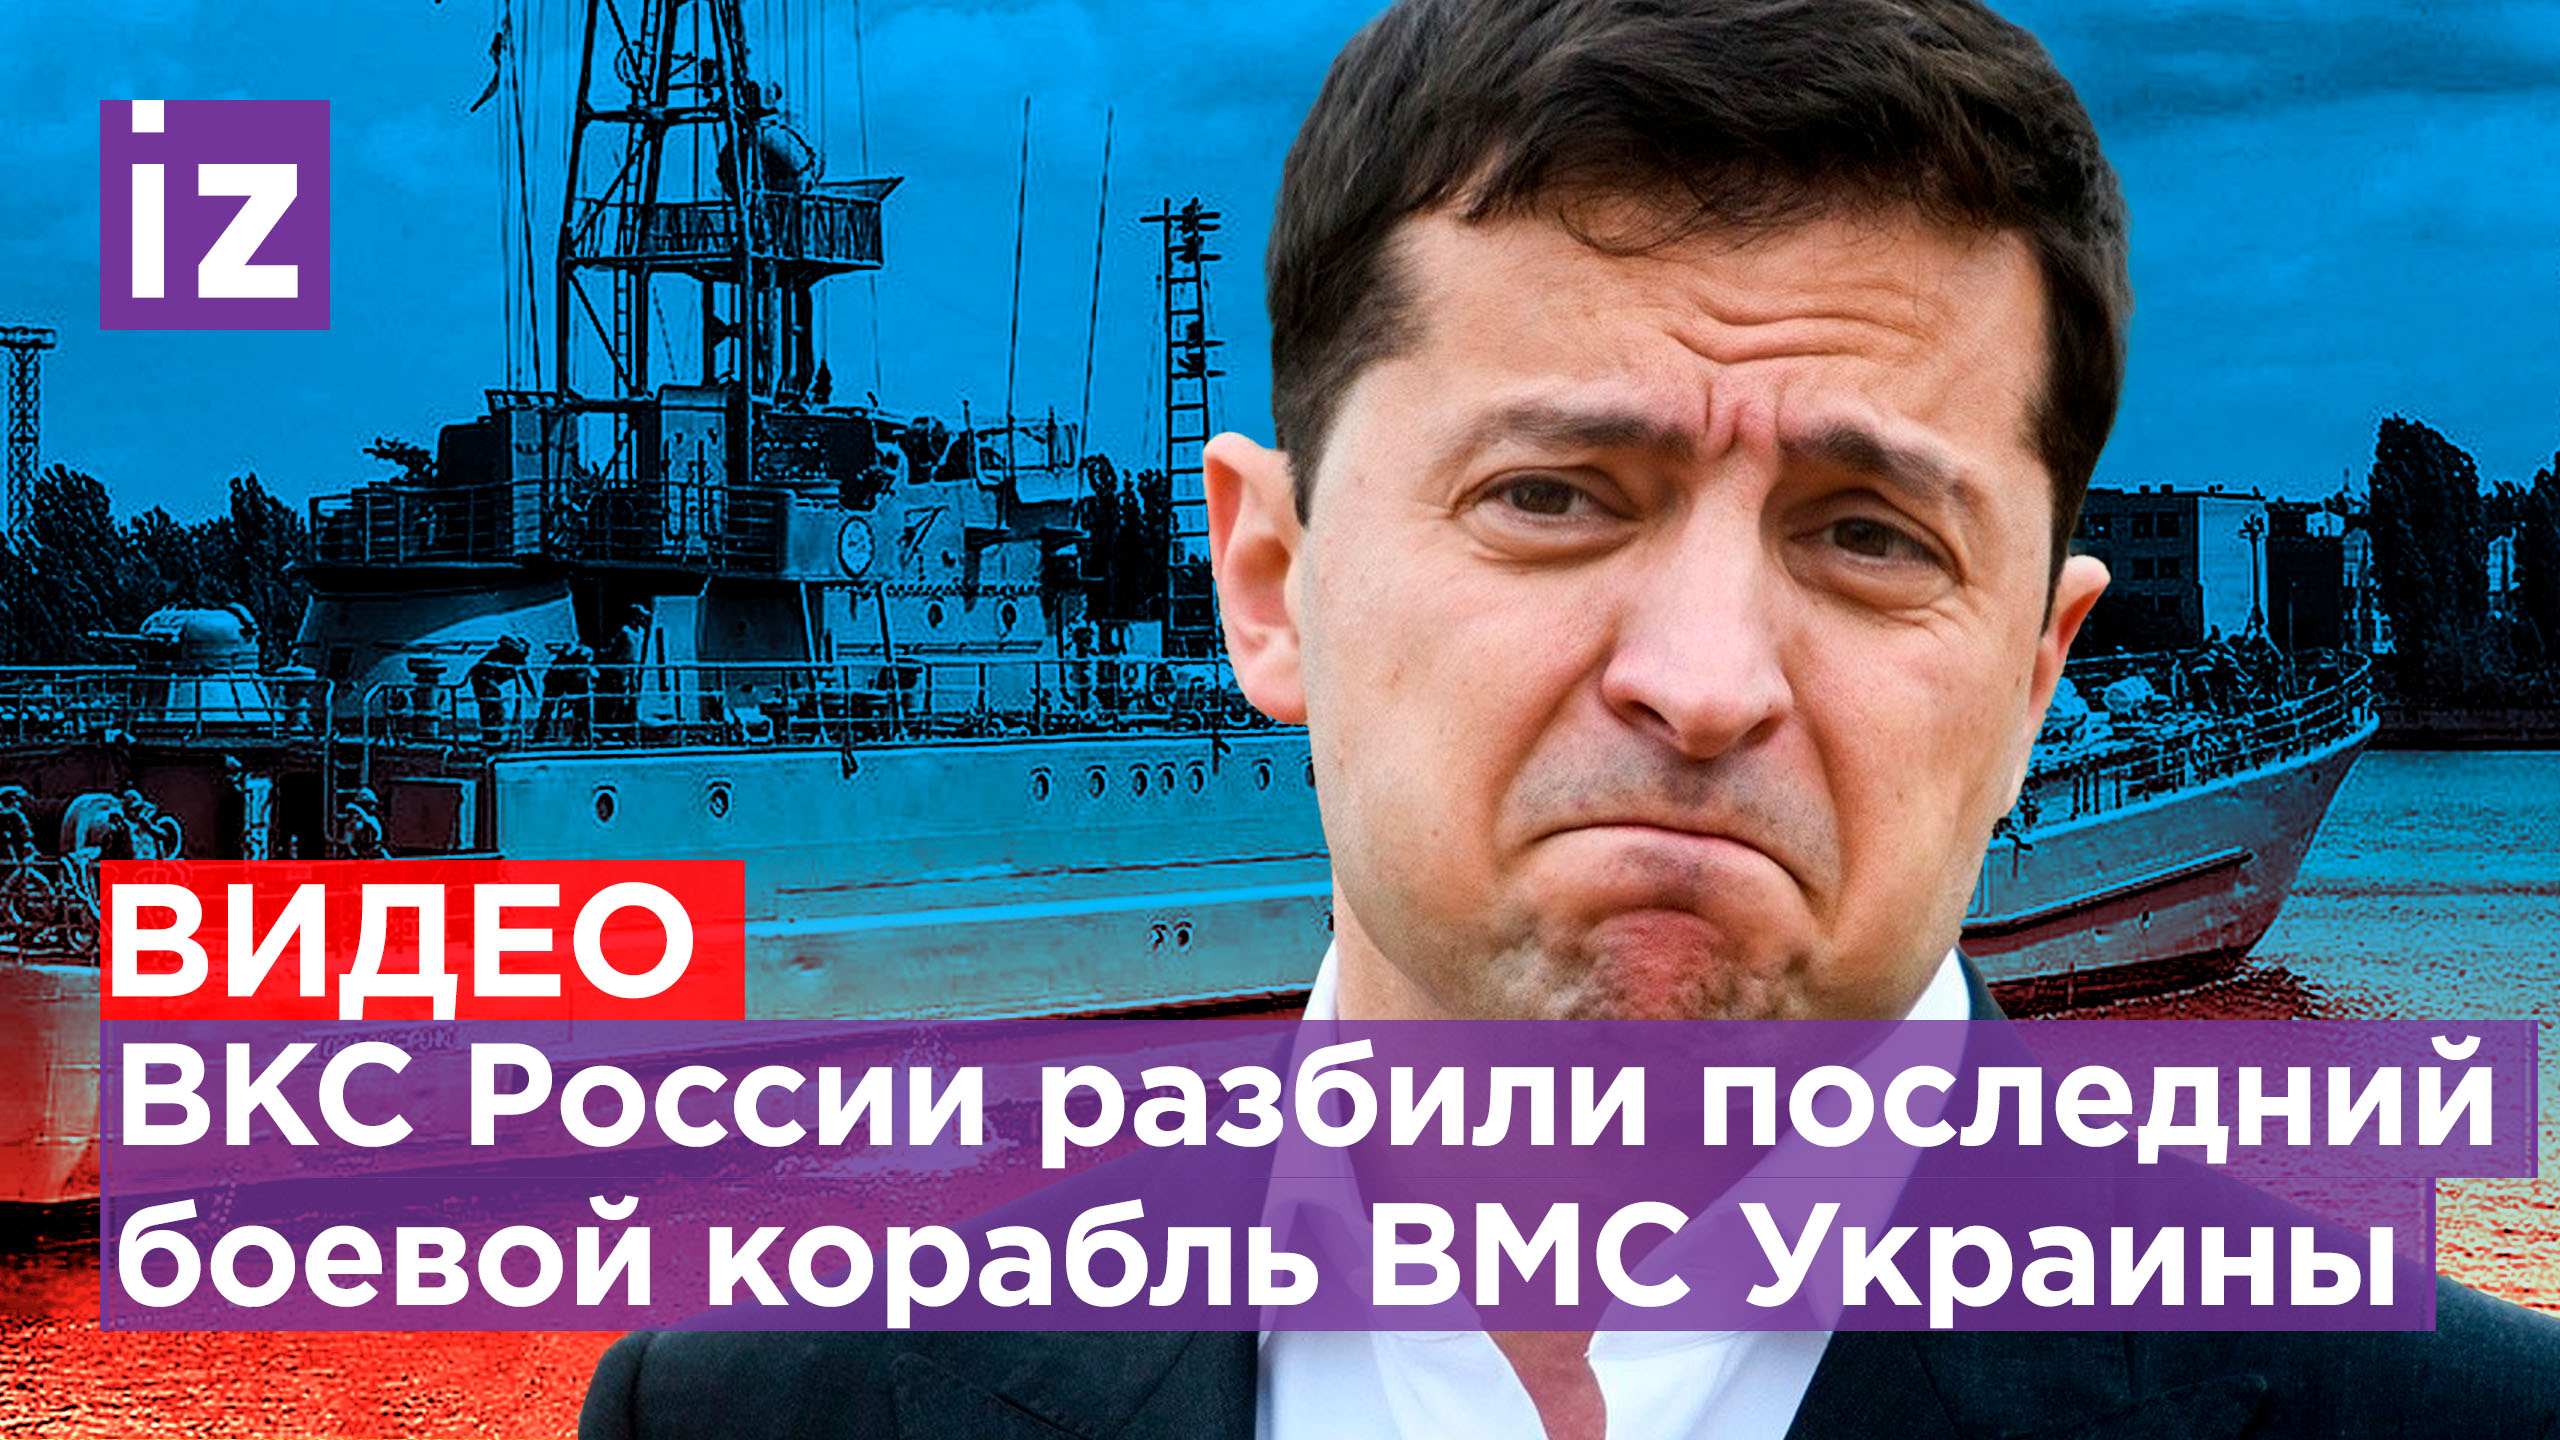 ВКС РФ уничтожили последний боевой корабль Украины. Пьяные националисты занимают дома мирных жителей